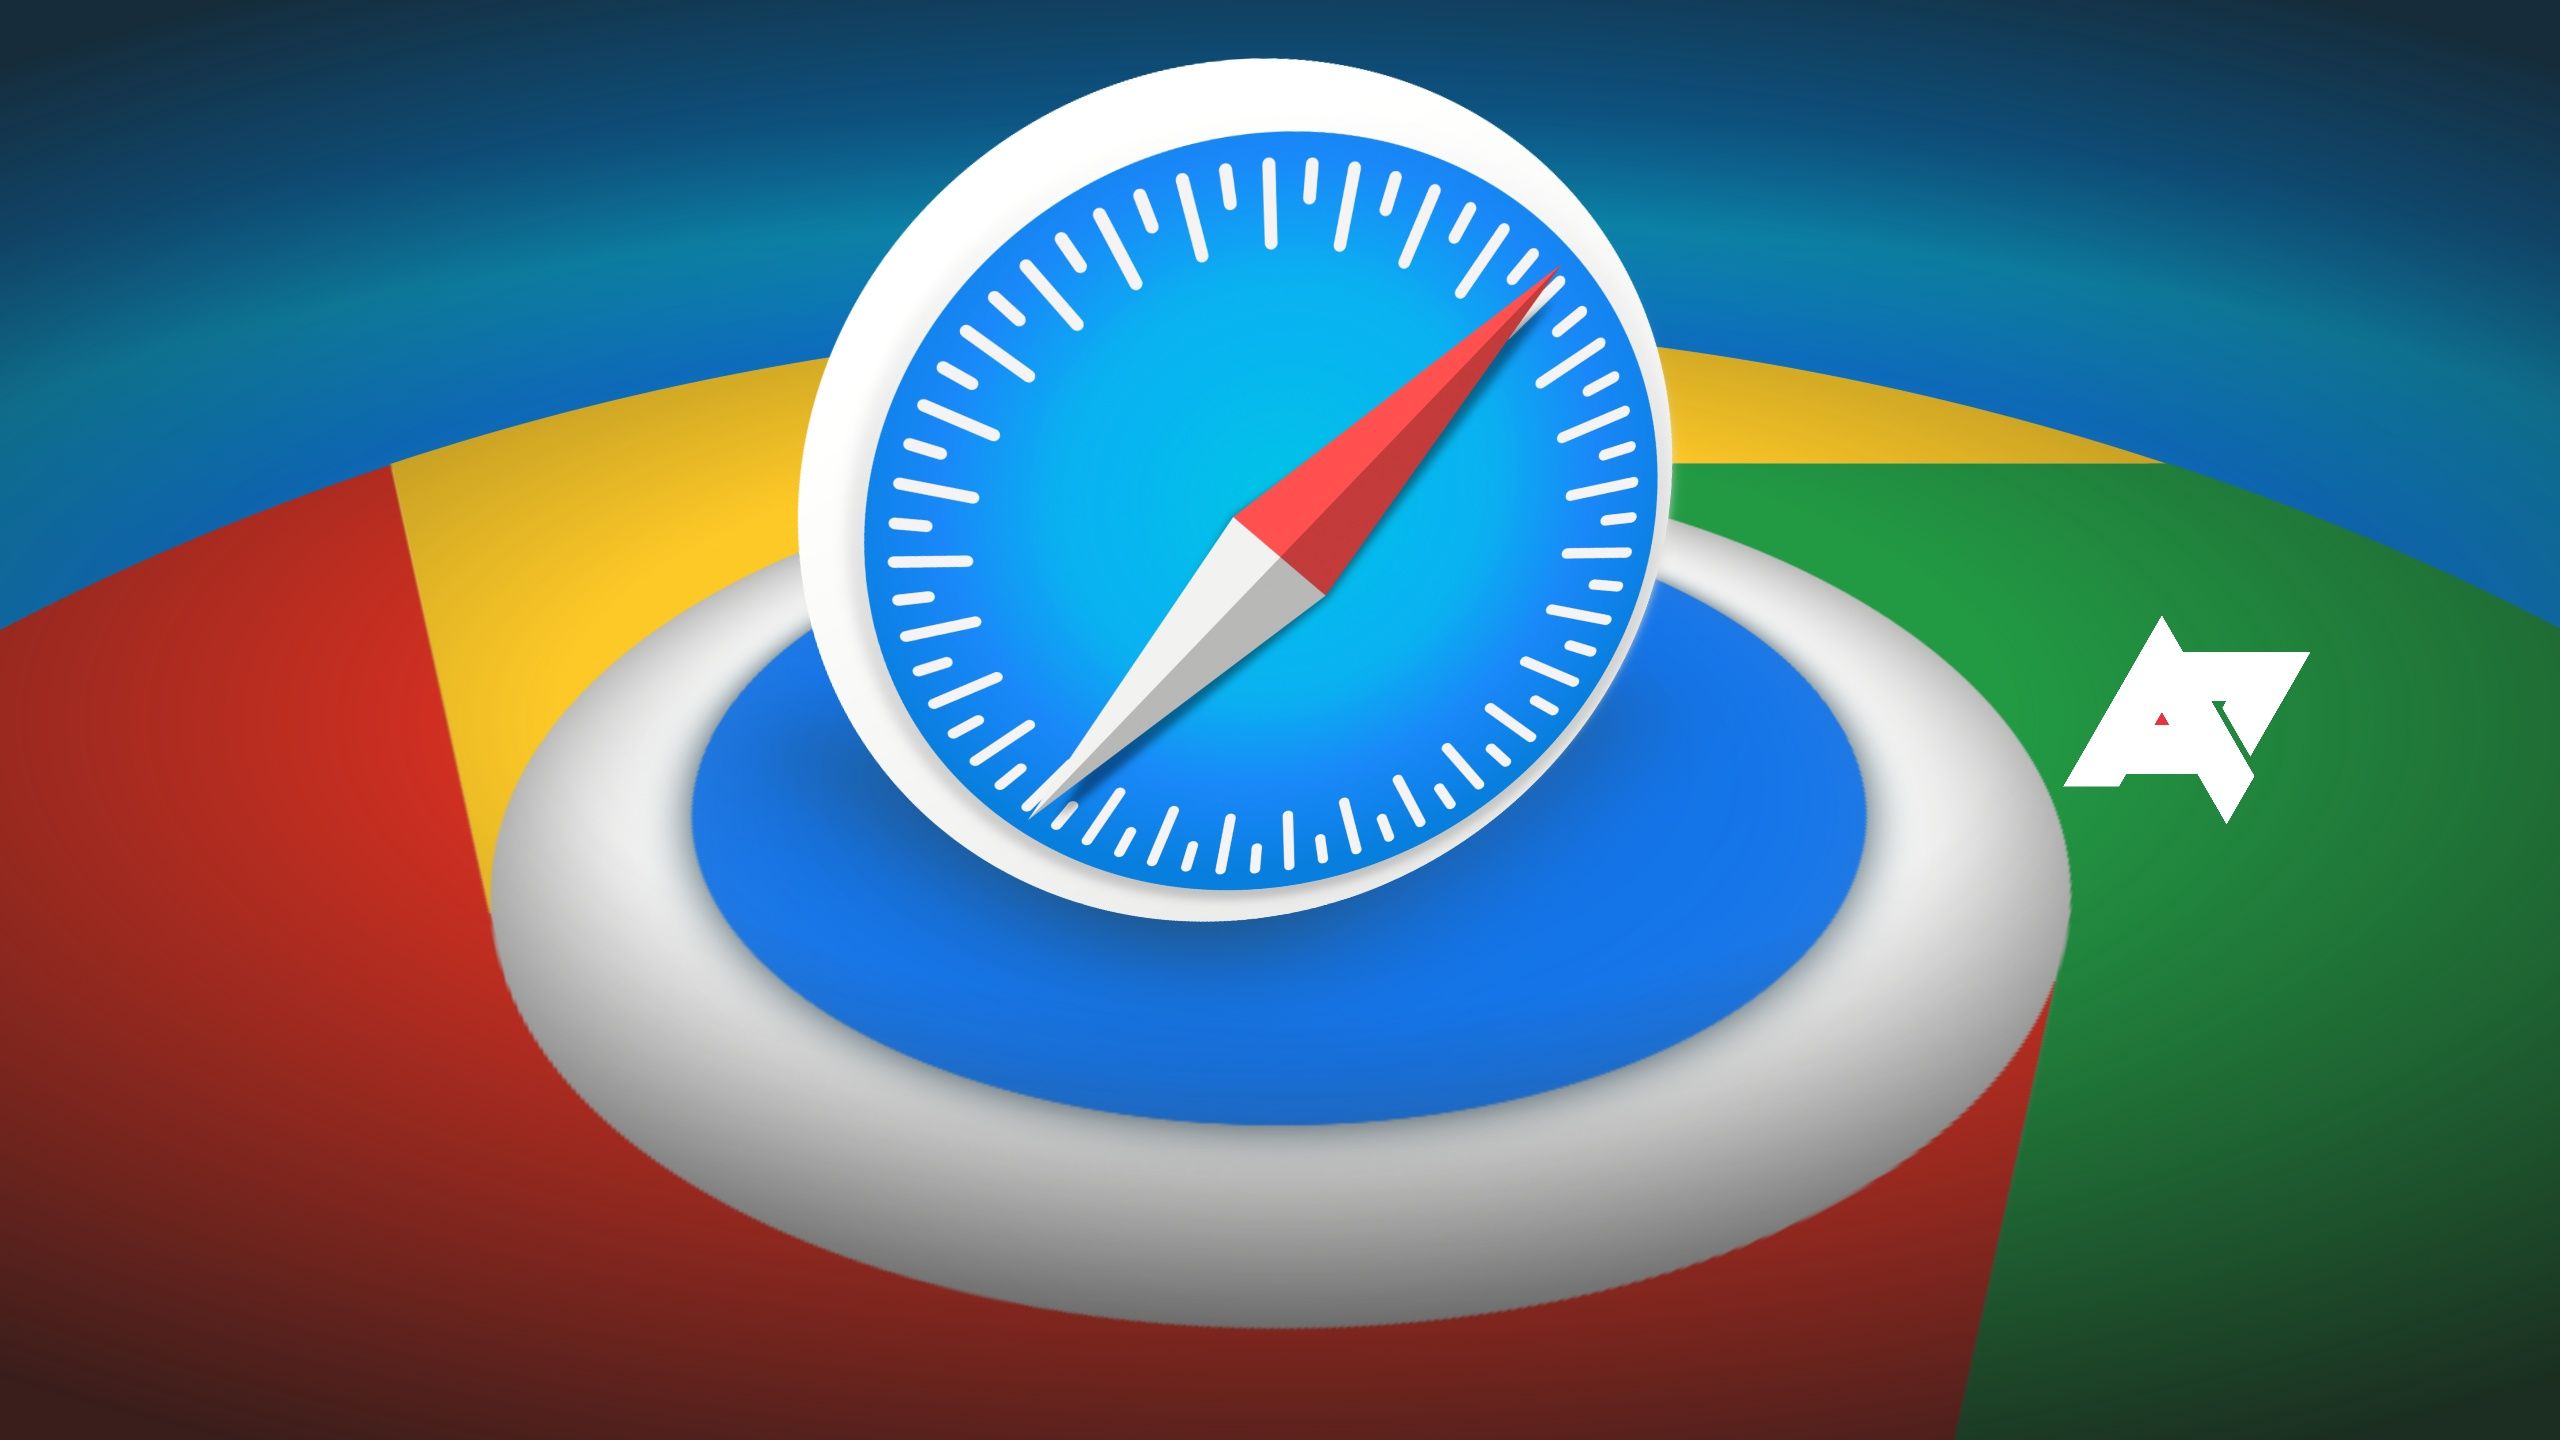 O logotipo do Safari colocado sobre o logotipo do Chrome.